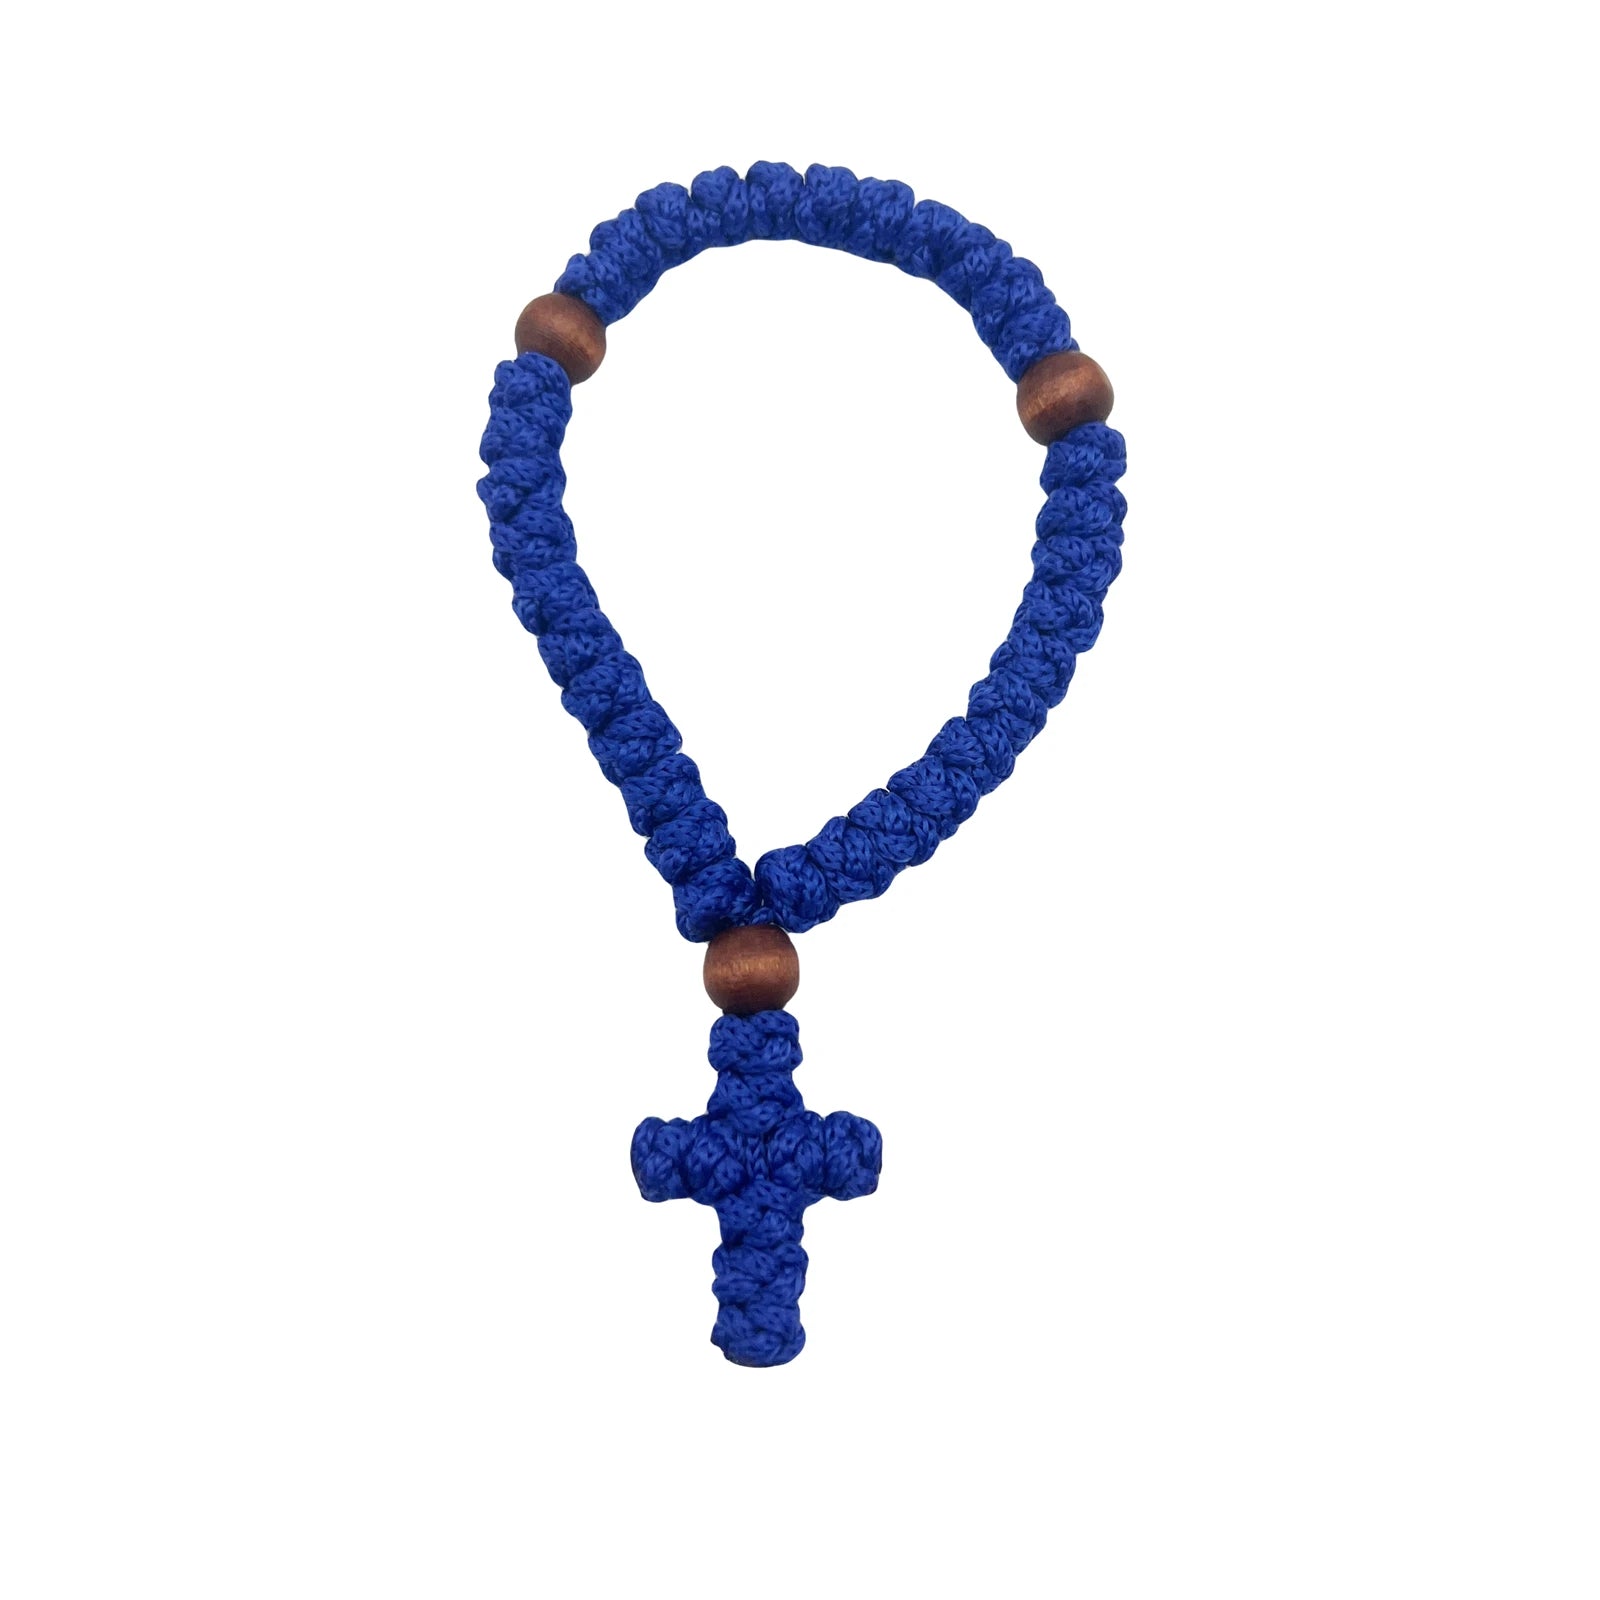 1Pc Handmade Christian 33 knot Orthodox Greek Omboskoini Prayer Rope Protection Blessing Cross Charm Tassel Car Hanging Charm Blue